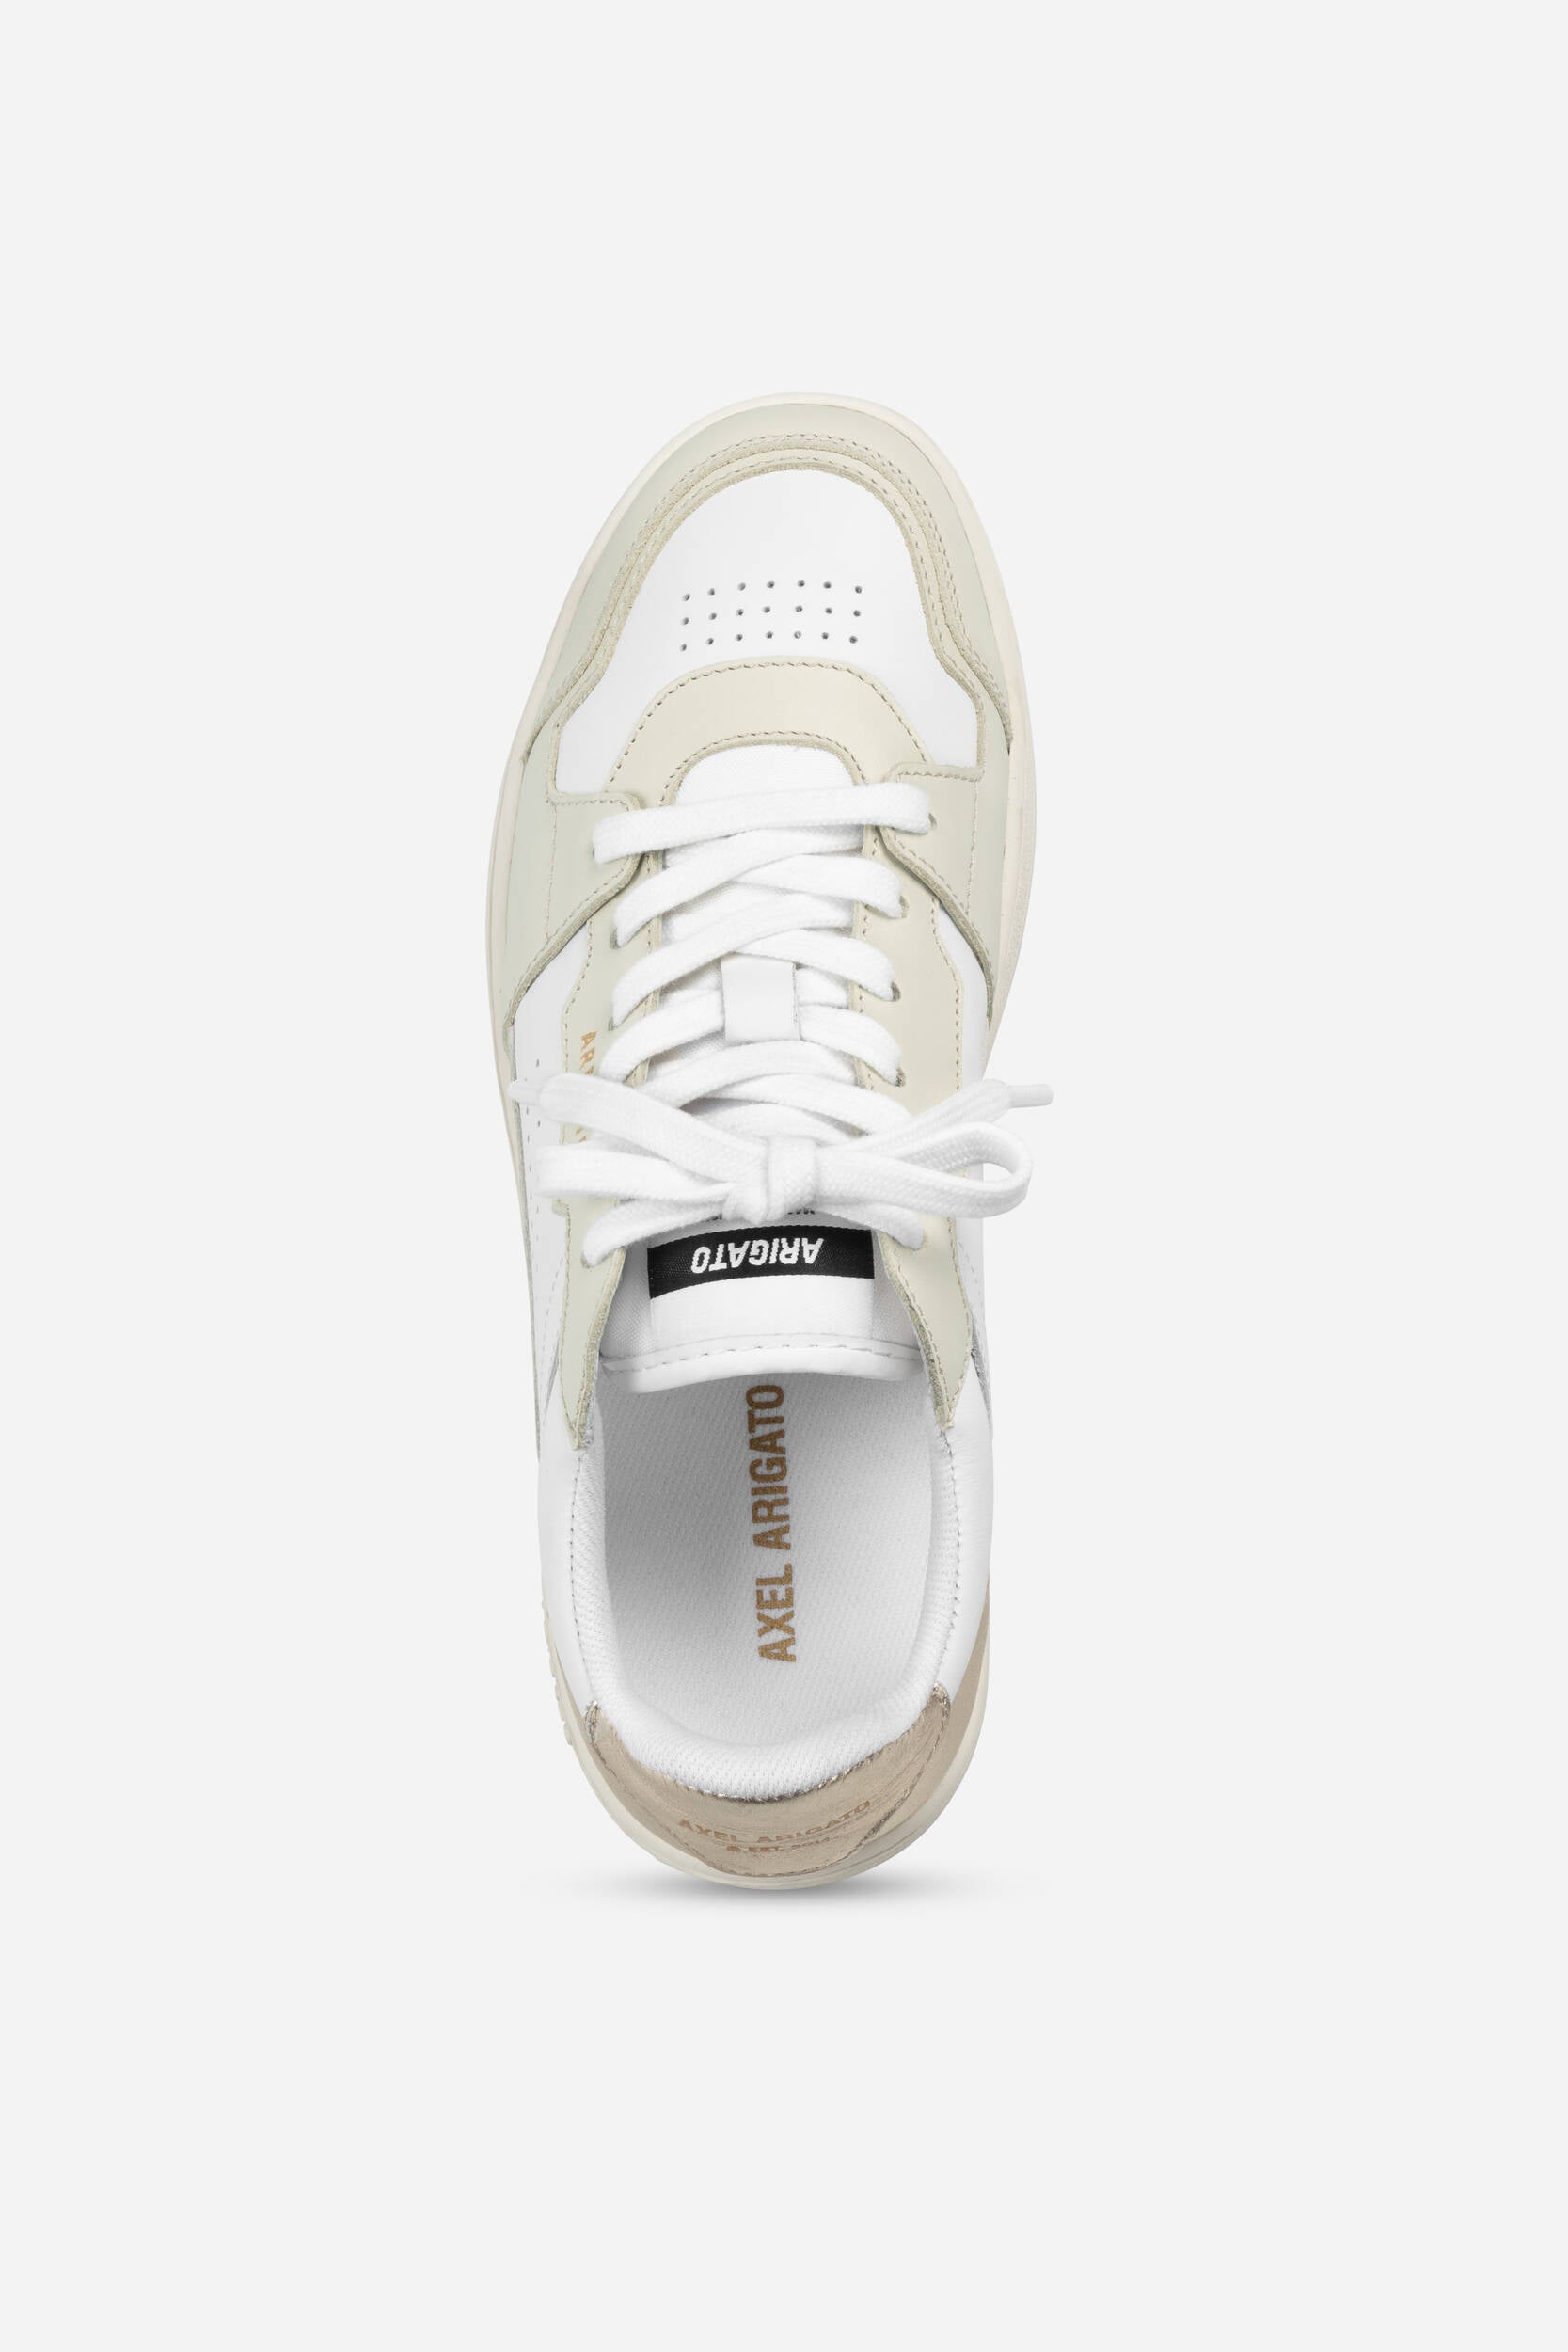 Dice Lo Sneaker - White/Gold